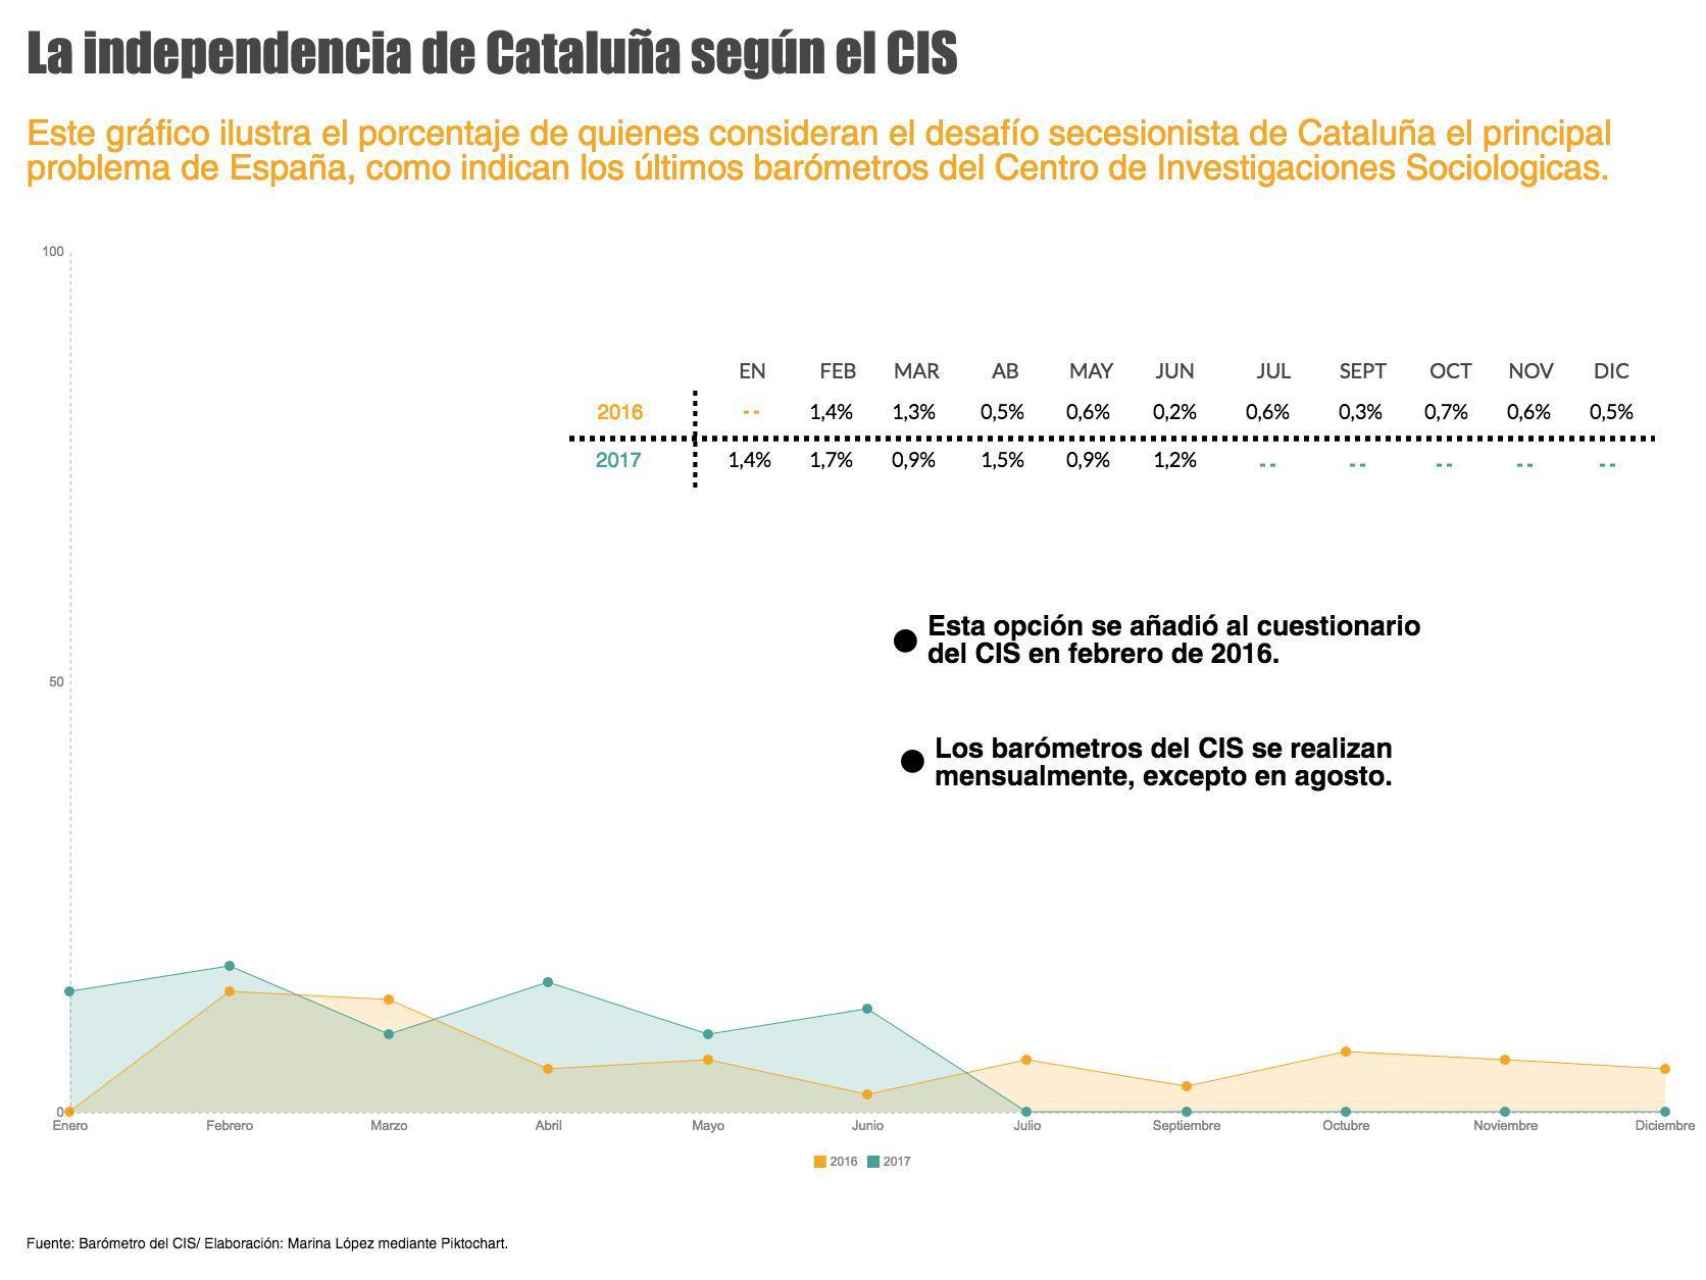 ¿Le preocupa a los españoles la independencia de Cataluña?